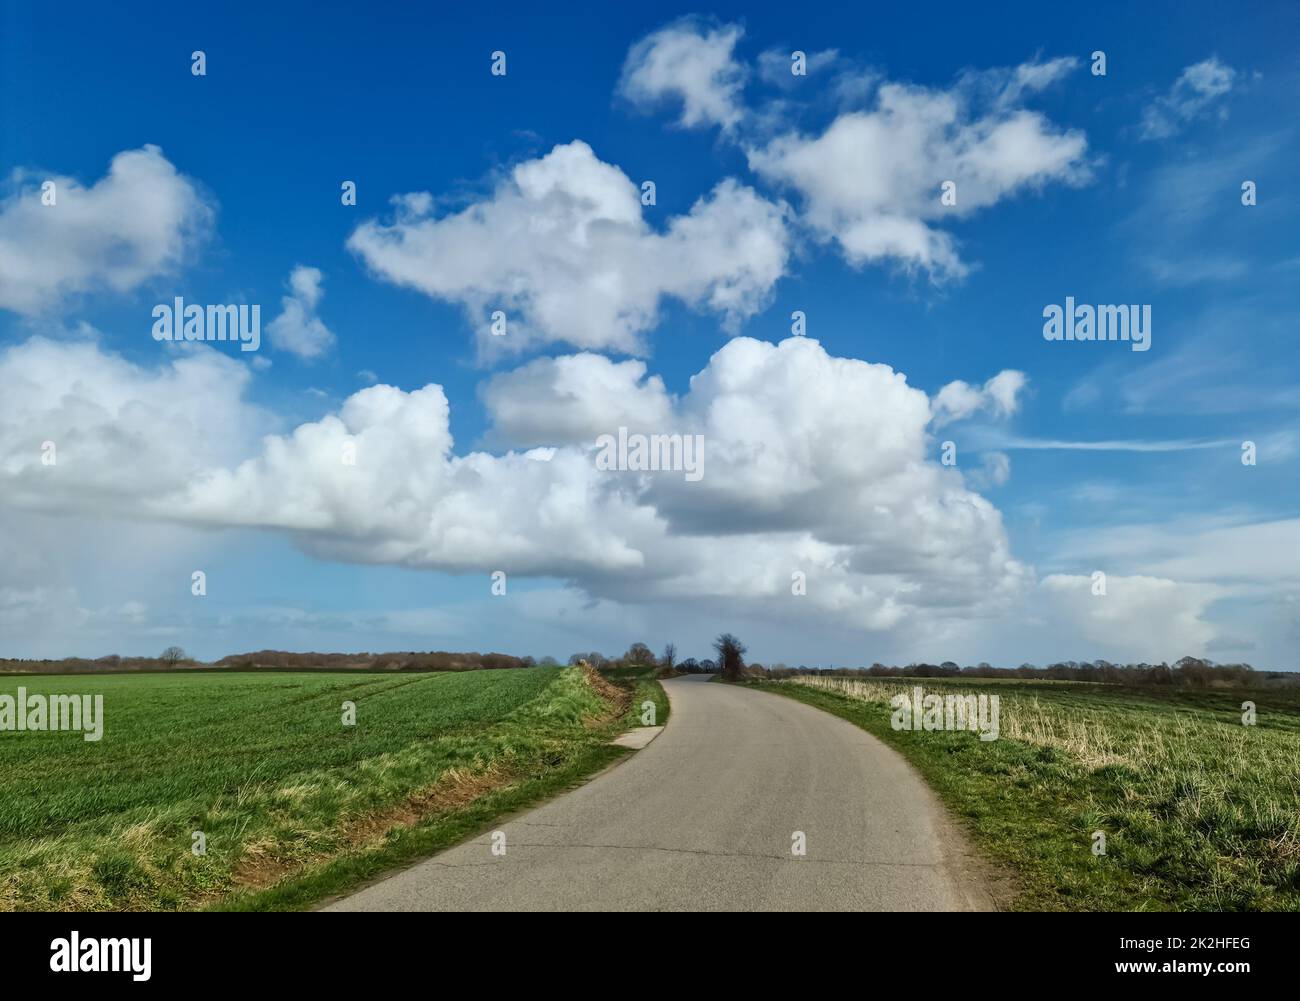 Panorama einer nordeuropäischen Landschaftslandschaft mit Feldern und grünem Gras Stockfoto